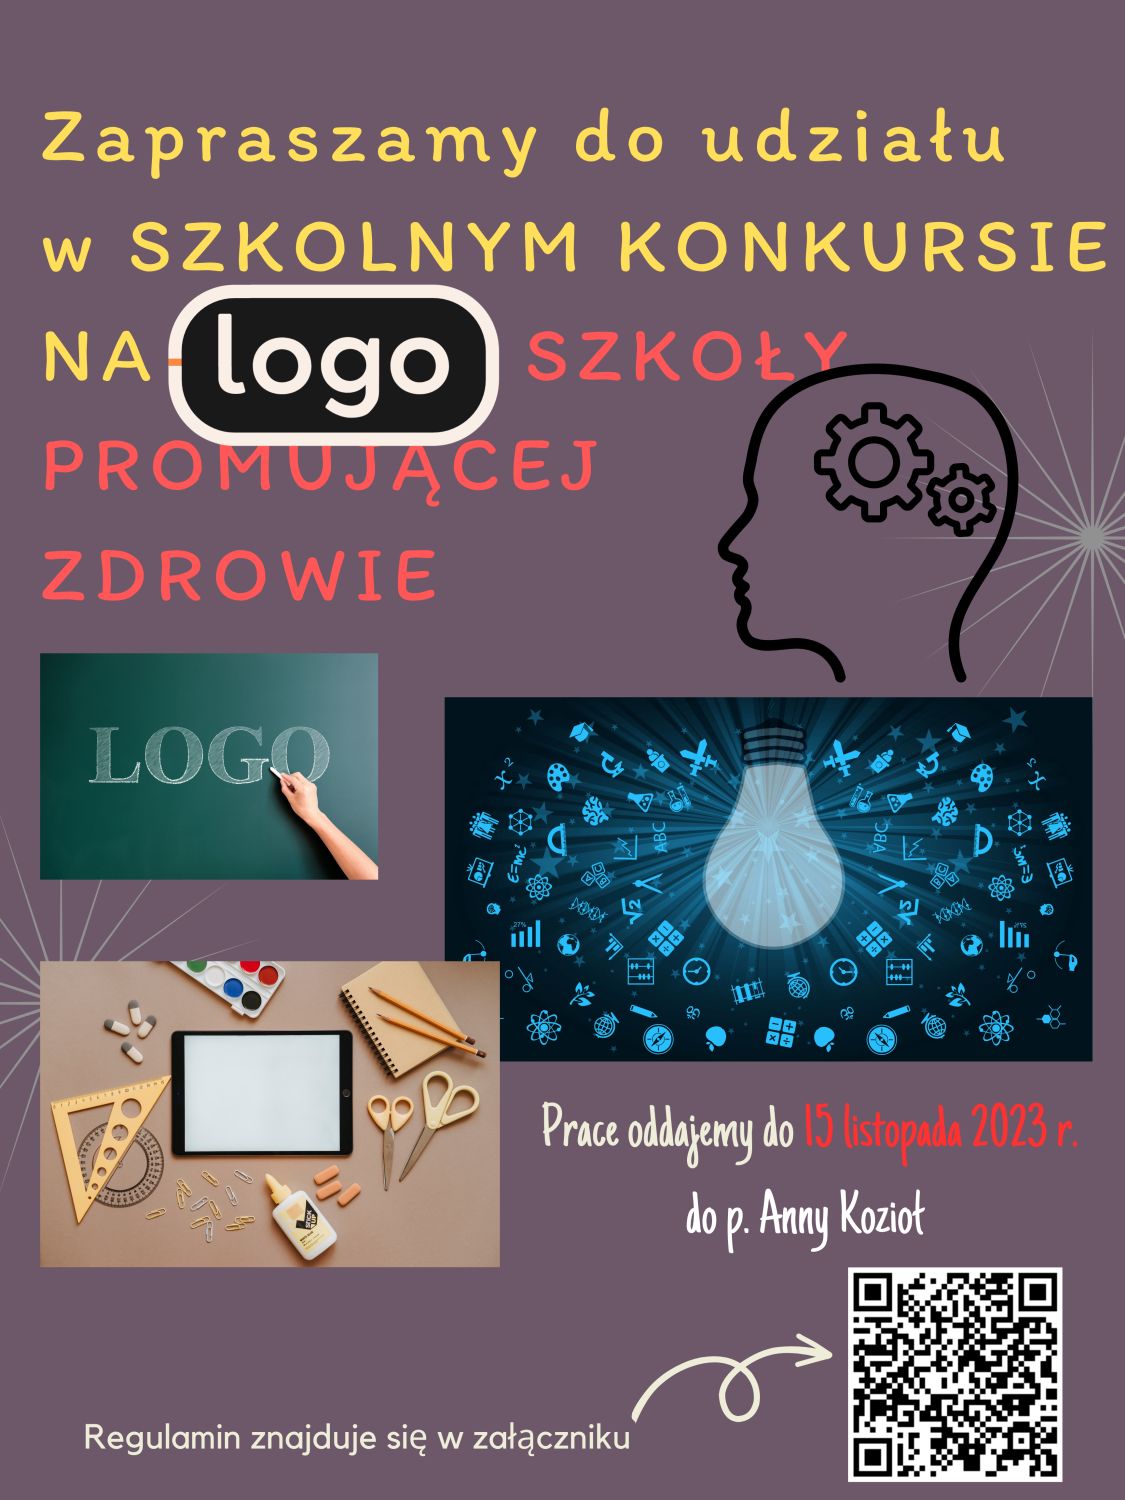 Szkolny konkurs na logo szkoły promującej zdrowie